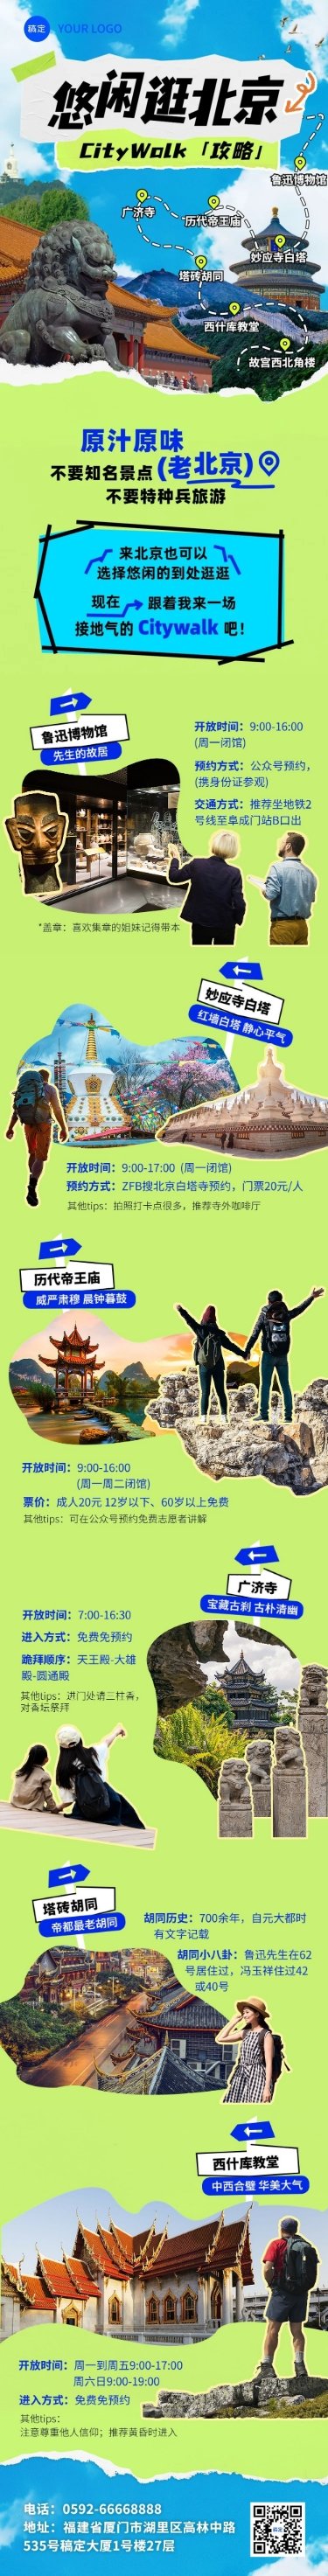 旅游出行北京旅游攻略撕纸拼贴风文章长图预览效果